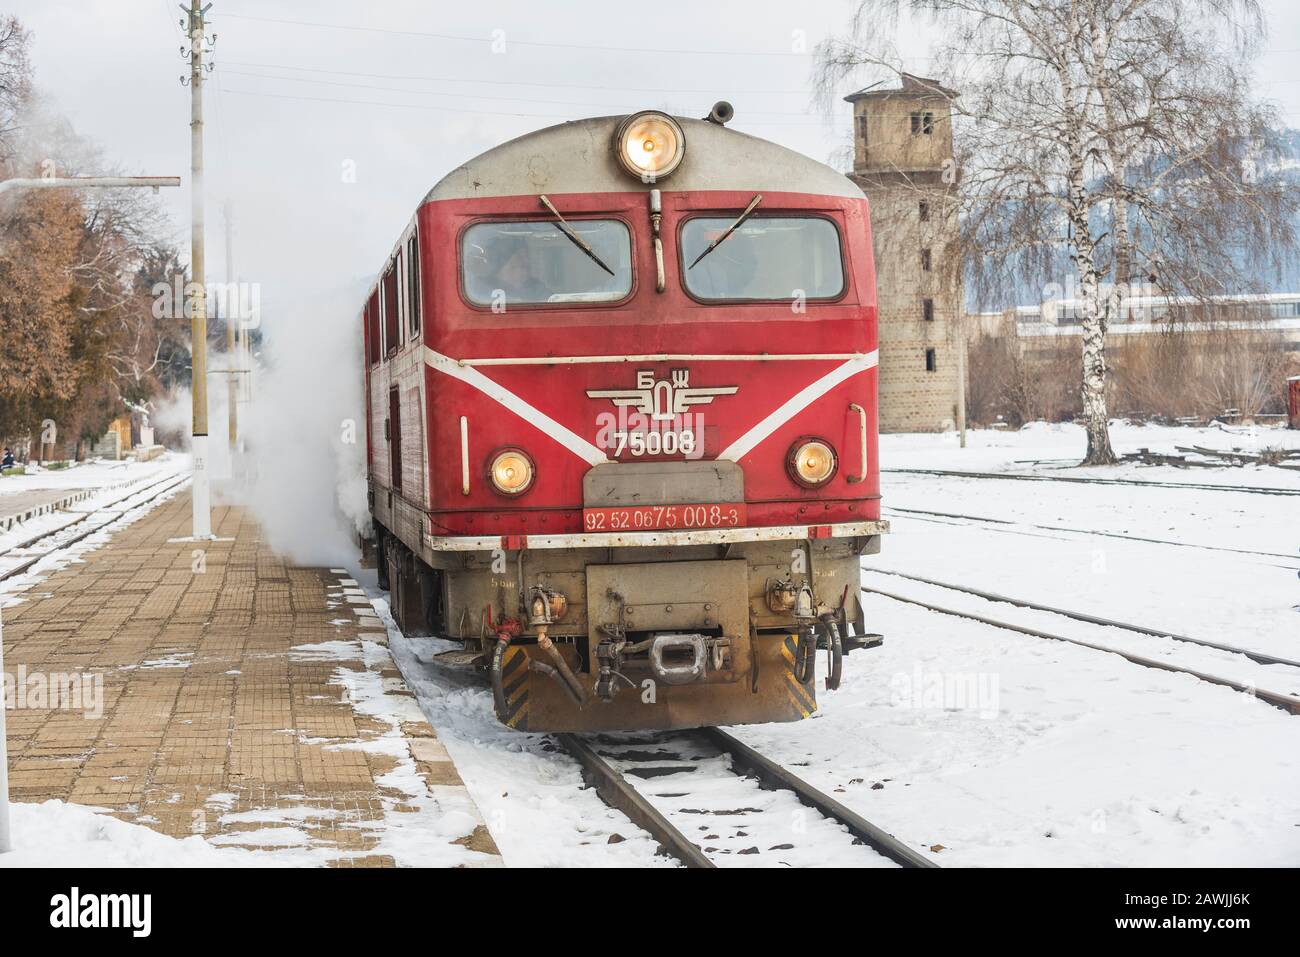 Stazione ferroviaria di Velingrad, Bulgaria - 8 febbraio 2020: Treno con locomotiva rossa e vagoni verdi arriva alla stazione ferroviaria. Foto Stock